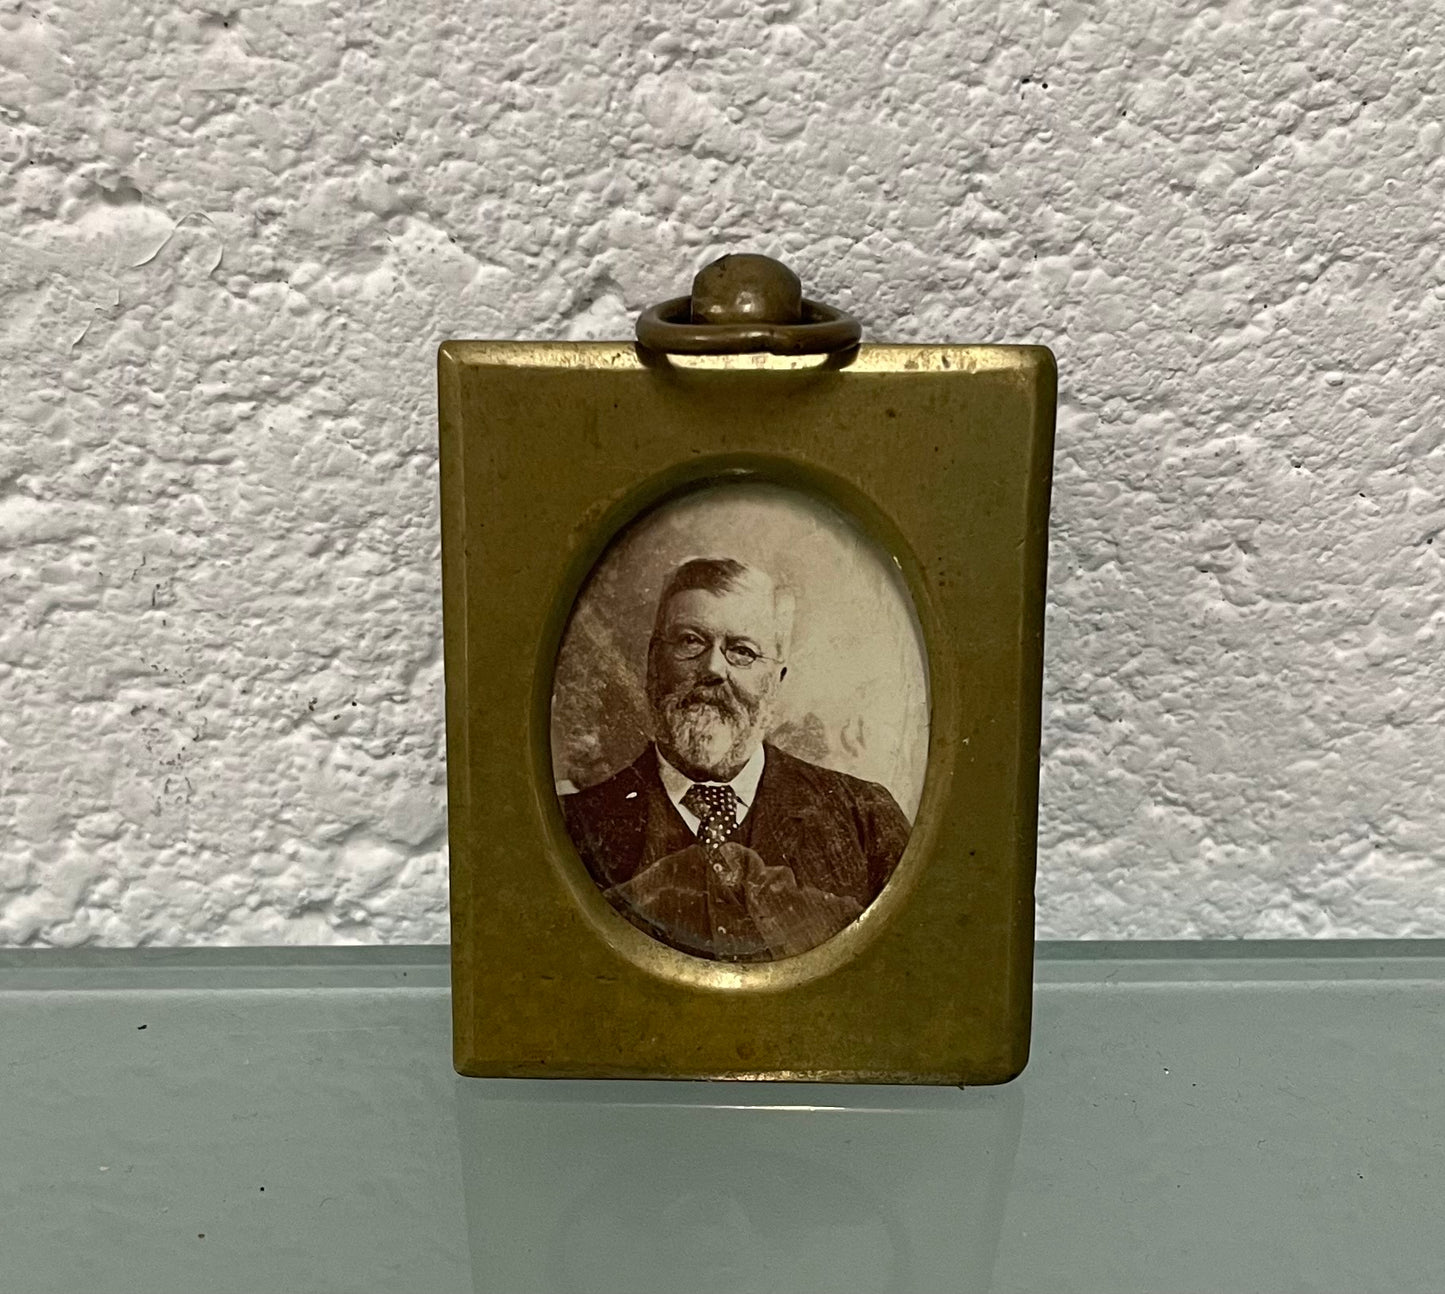 Antique Miniature brass frame